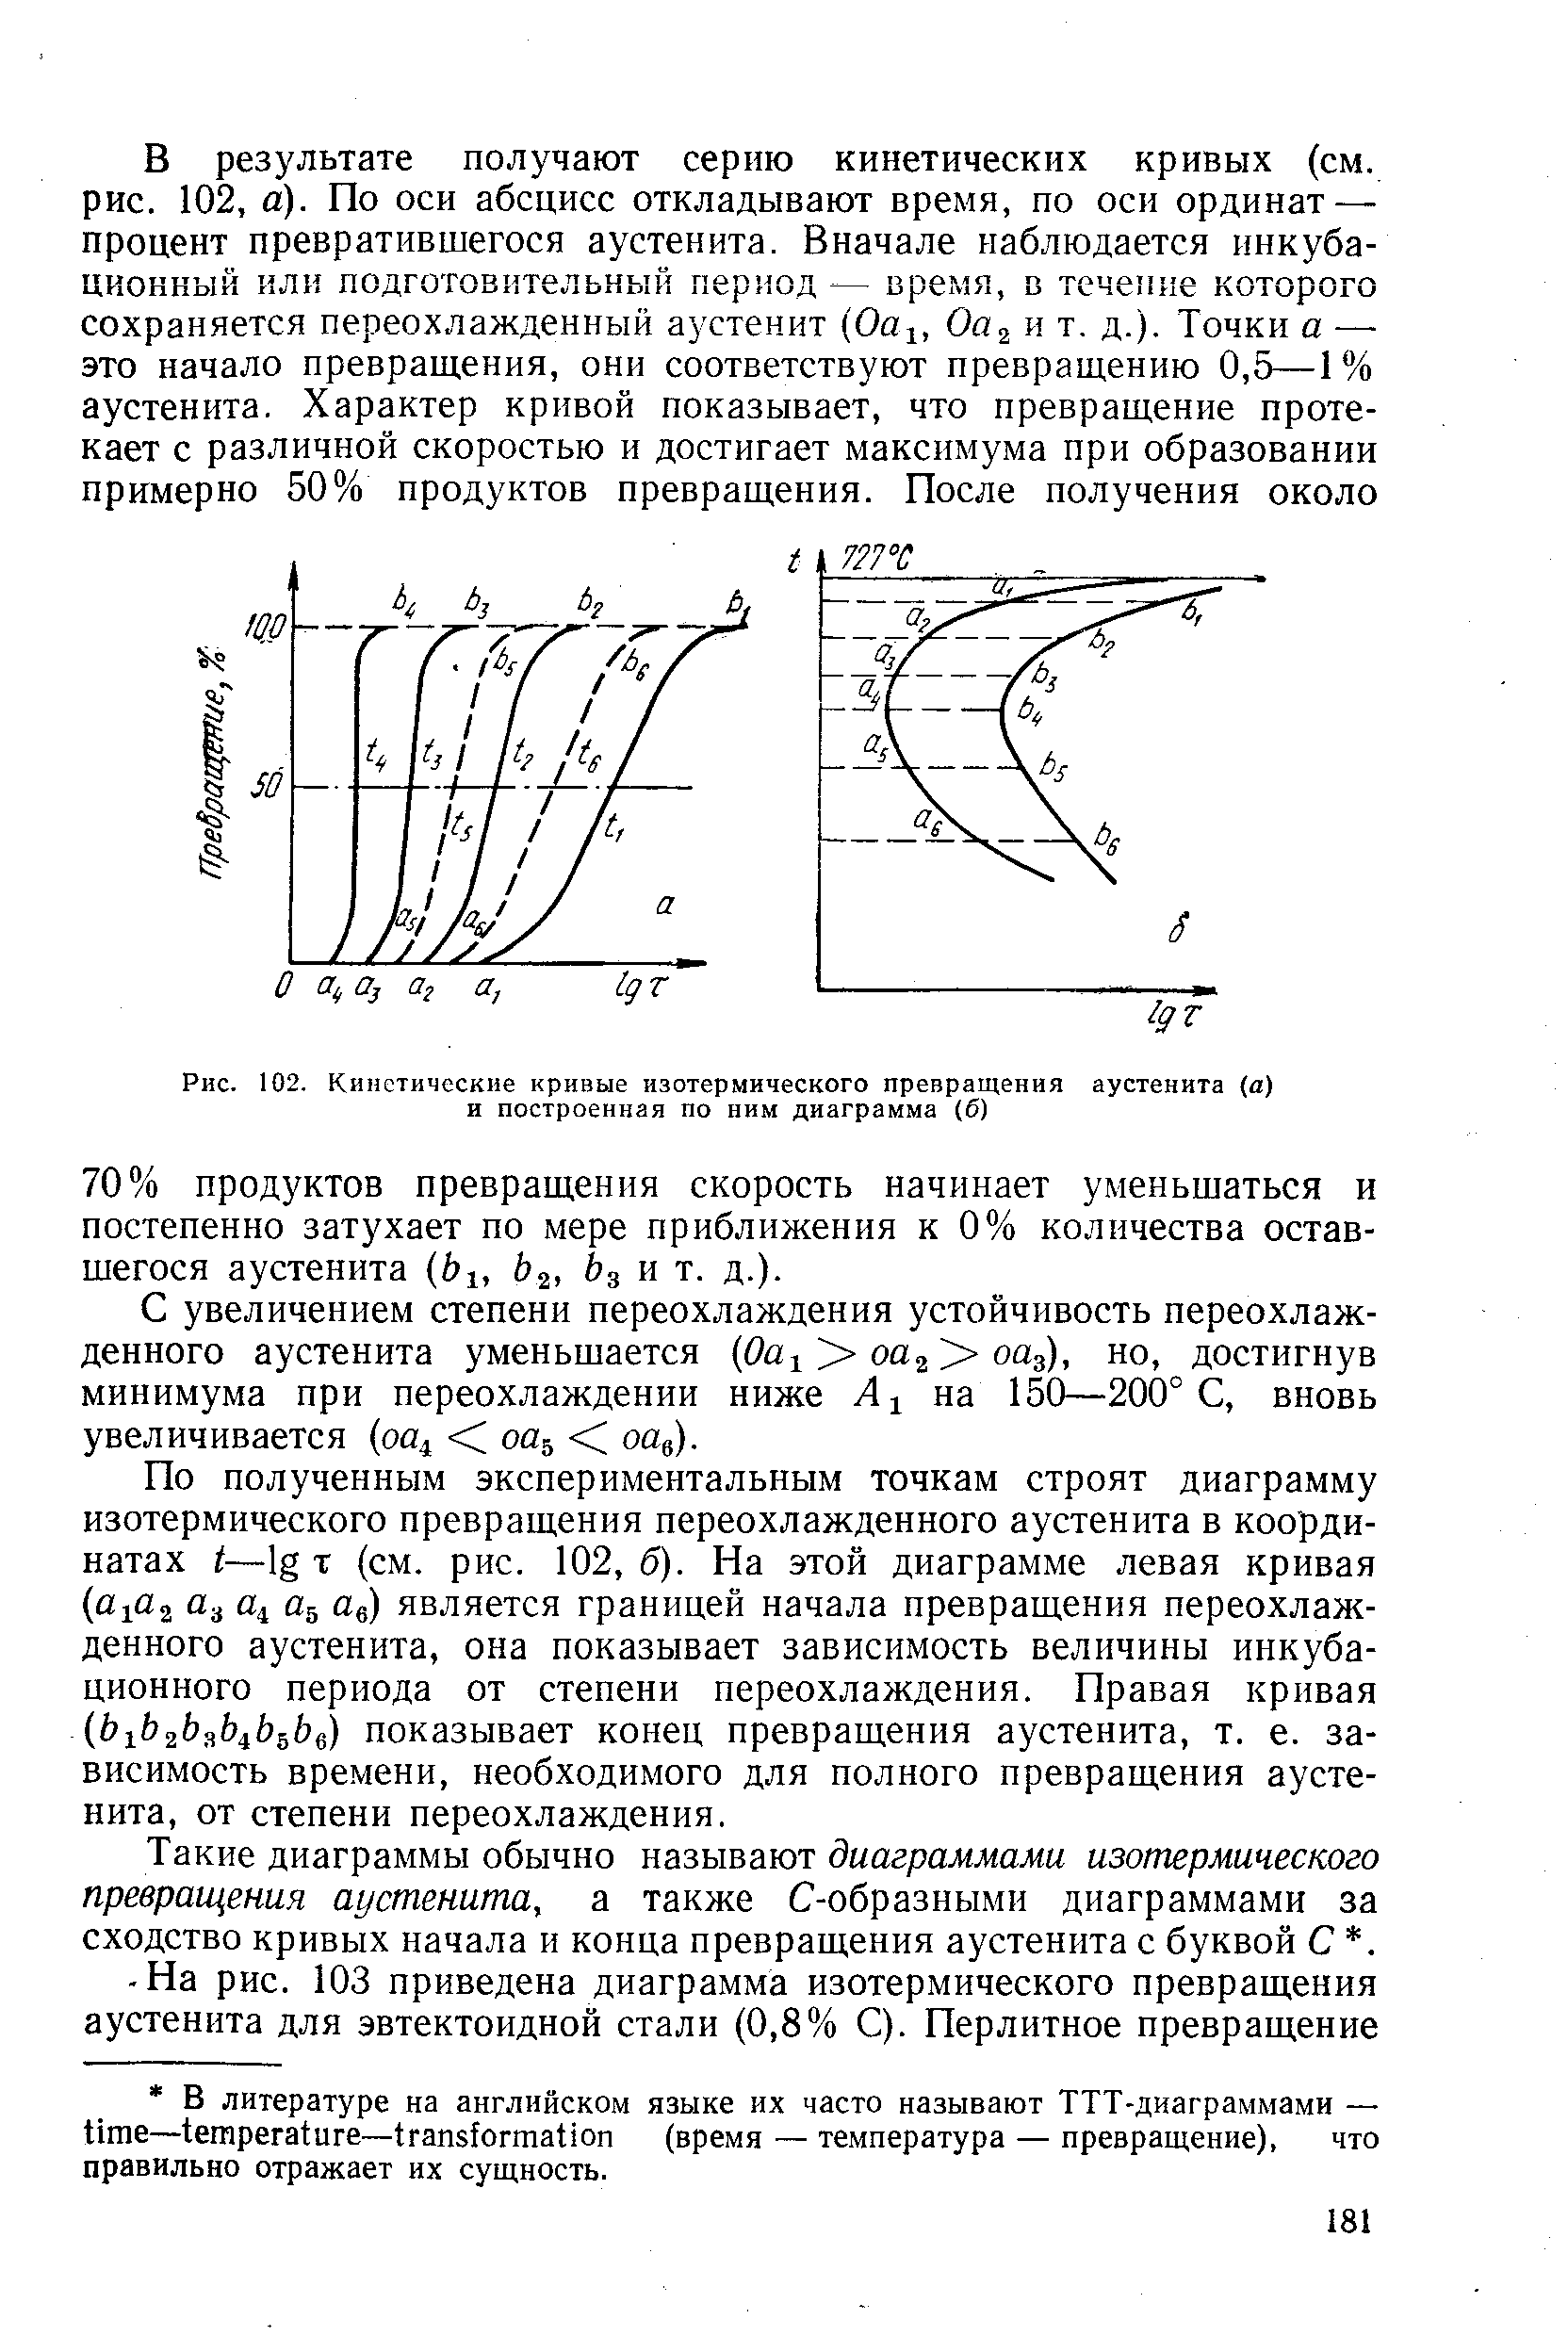 Рис. 102. Кинетические кривые изотермического превращения аустенита а) и построенная по ним диаграмма (б)
